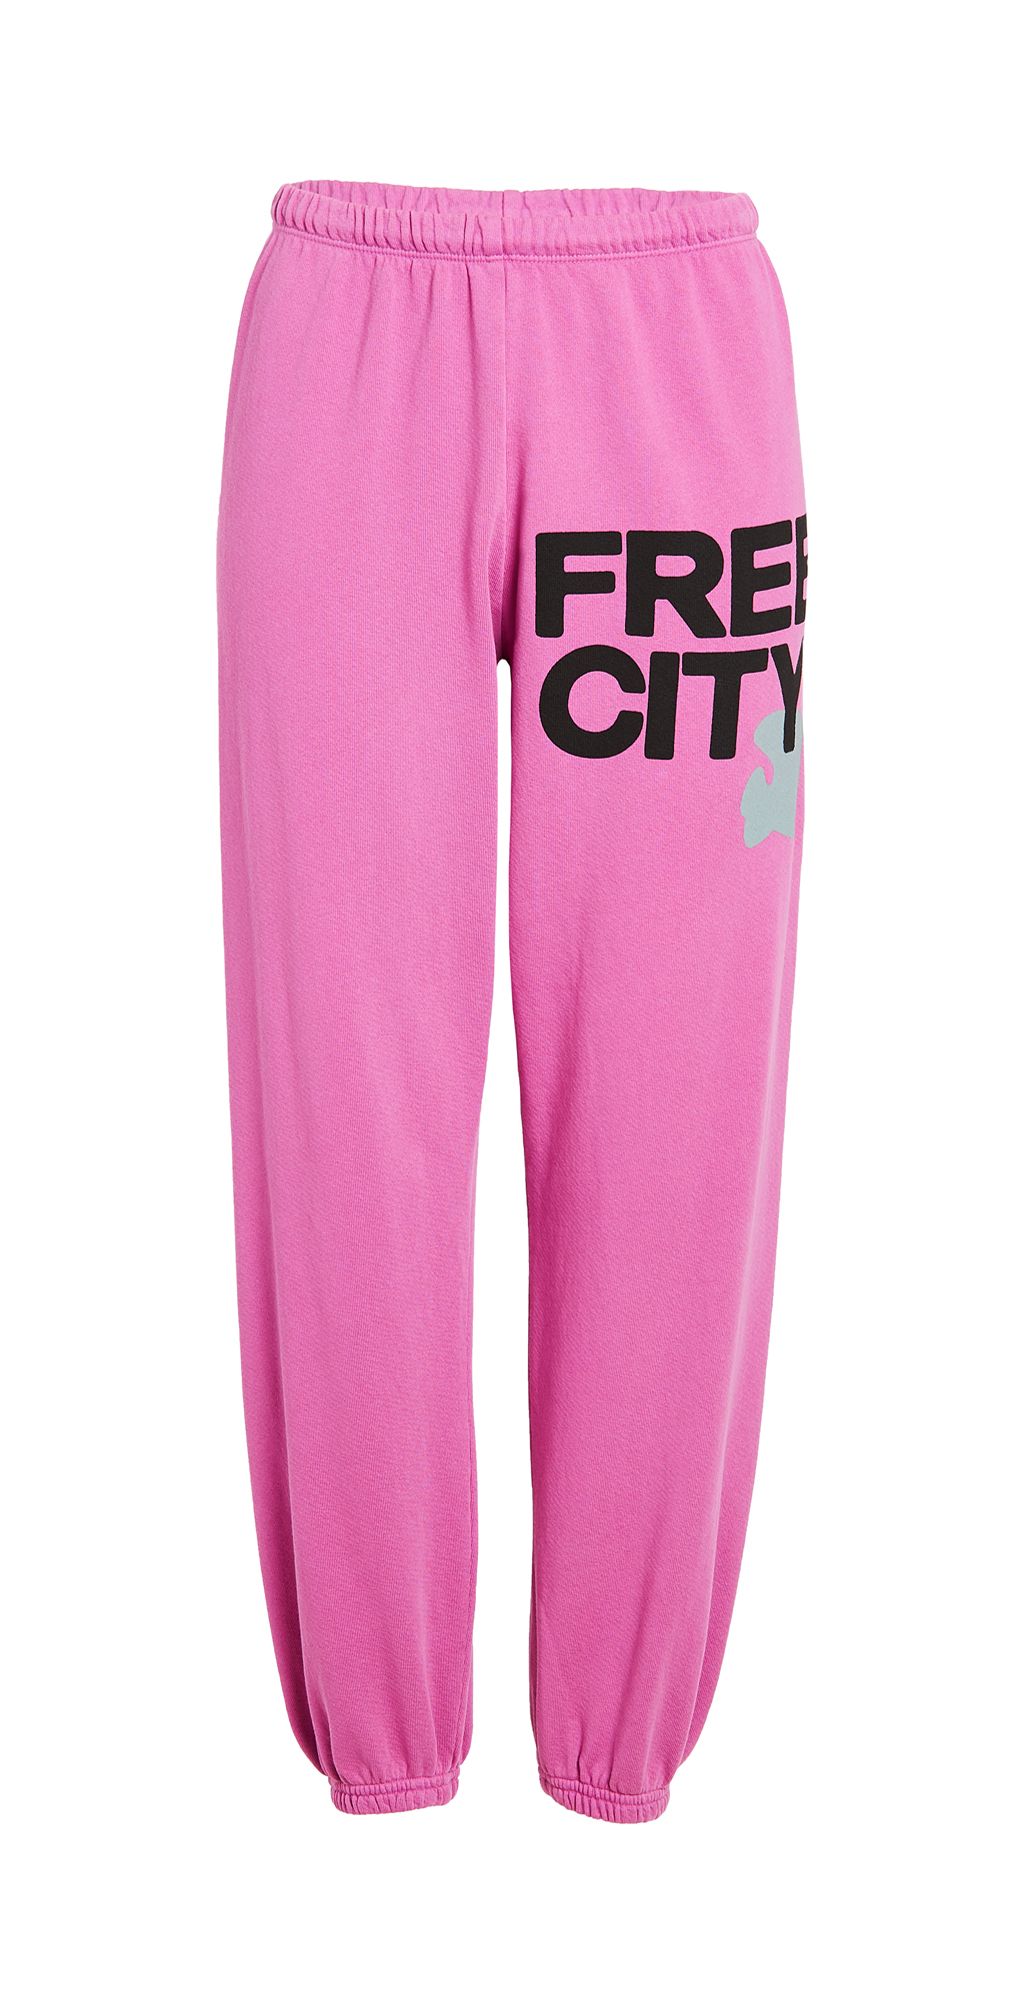 Freecity Large Sweatpants | Shopbop